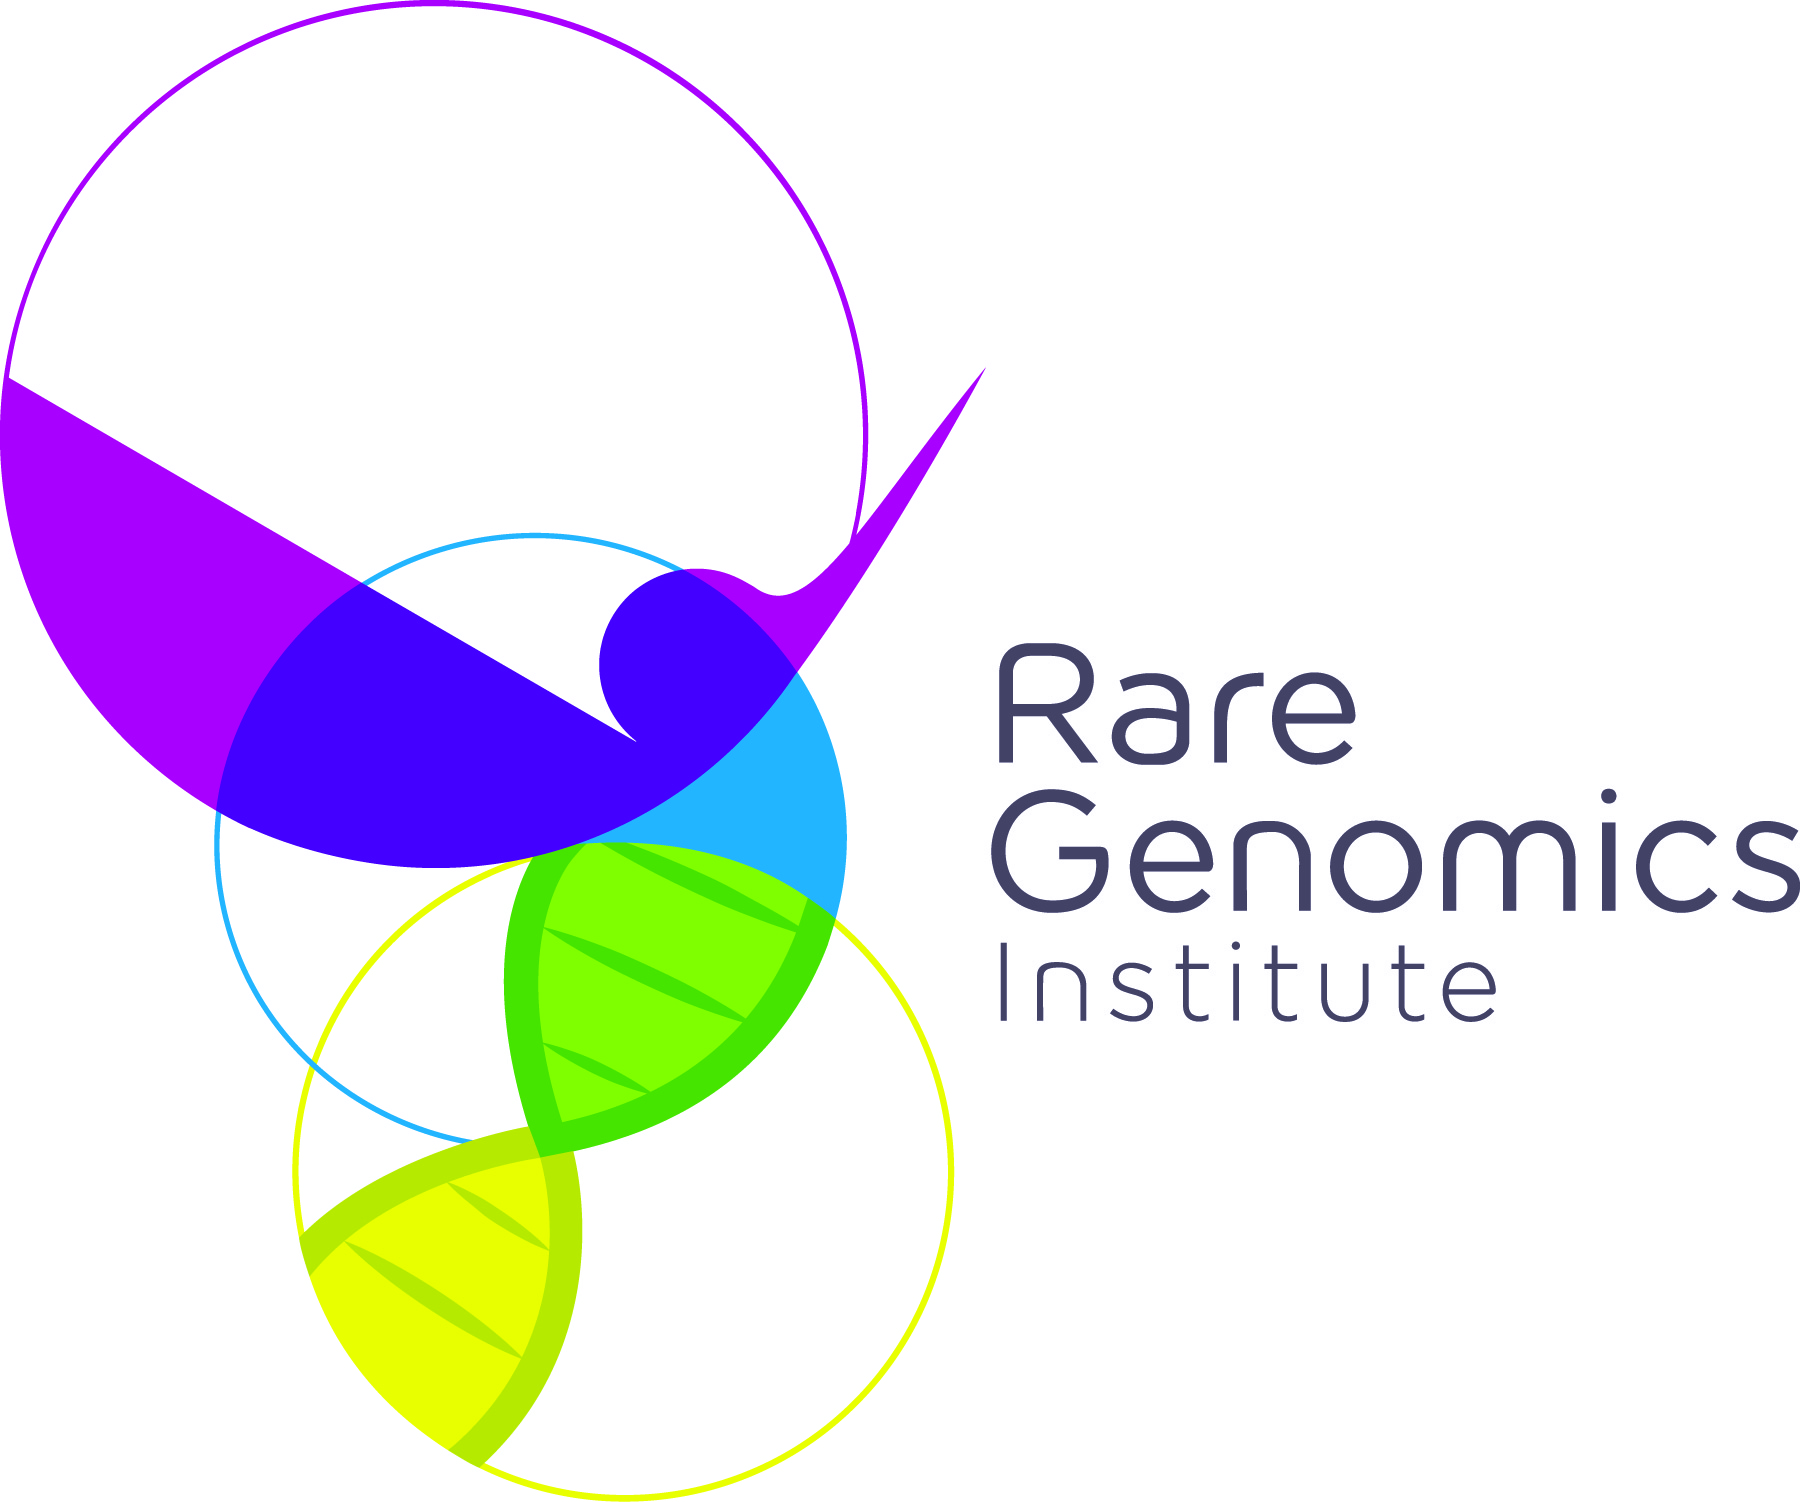 Rare Genomics Institute. Inc logo